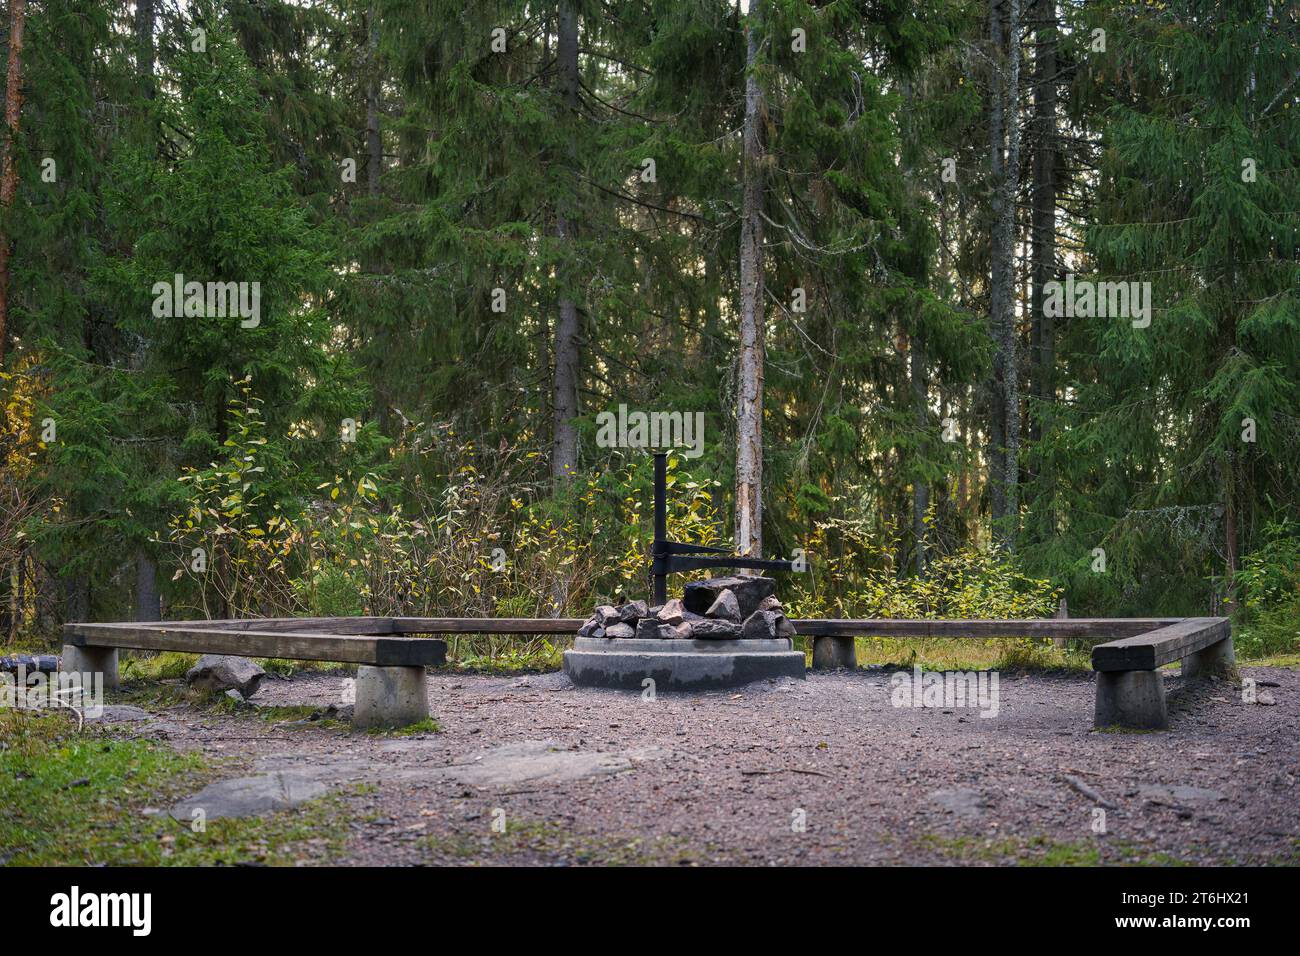 Sitio de fogata vacío con bancos de madera y el pozo de fuego de hormigón, vista lateral. Hollola, Finlandia. Foto de stock